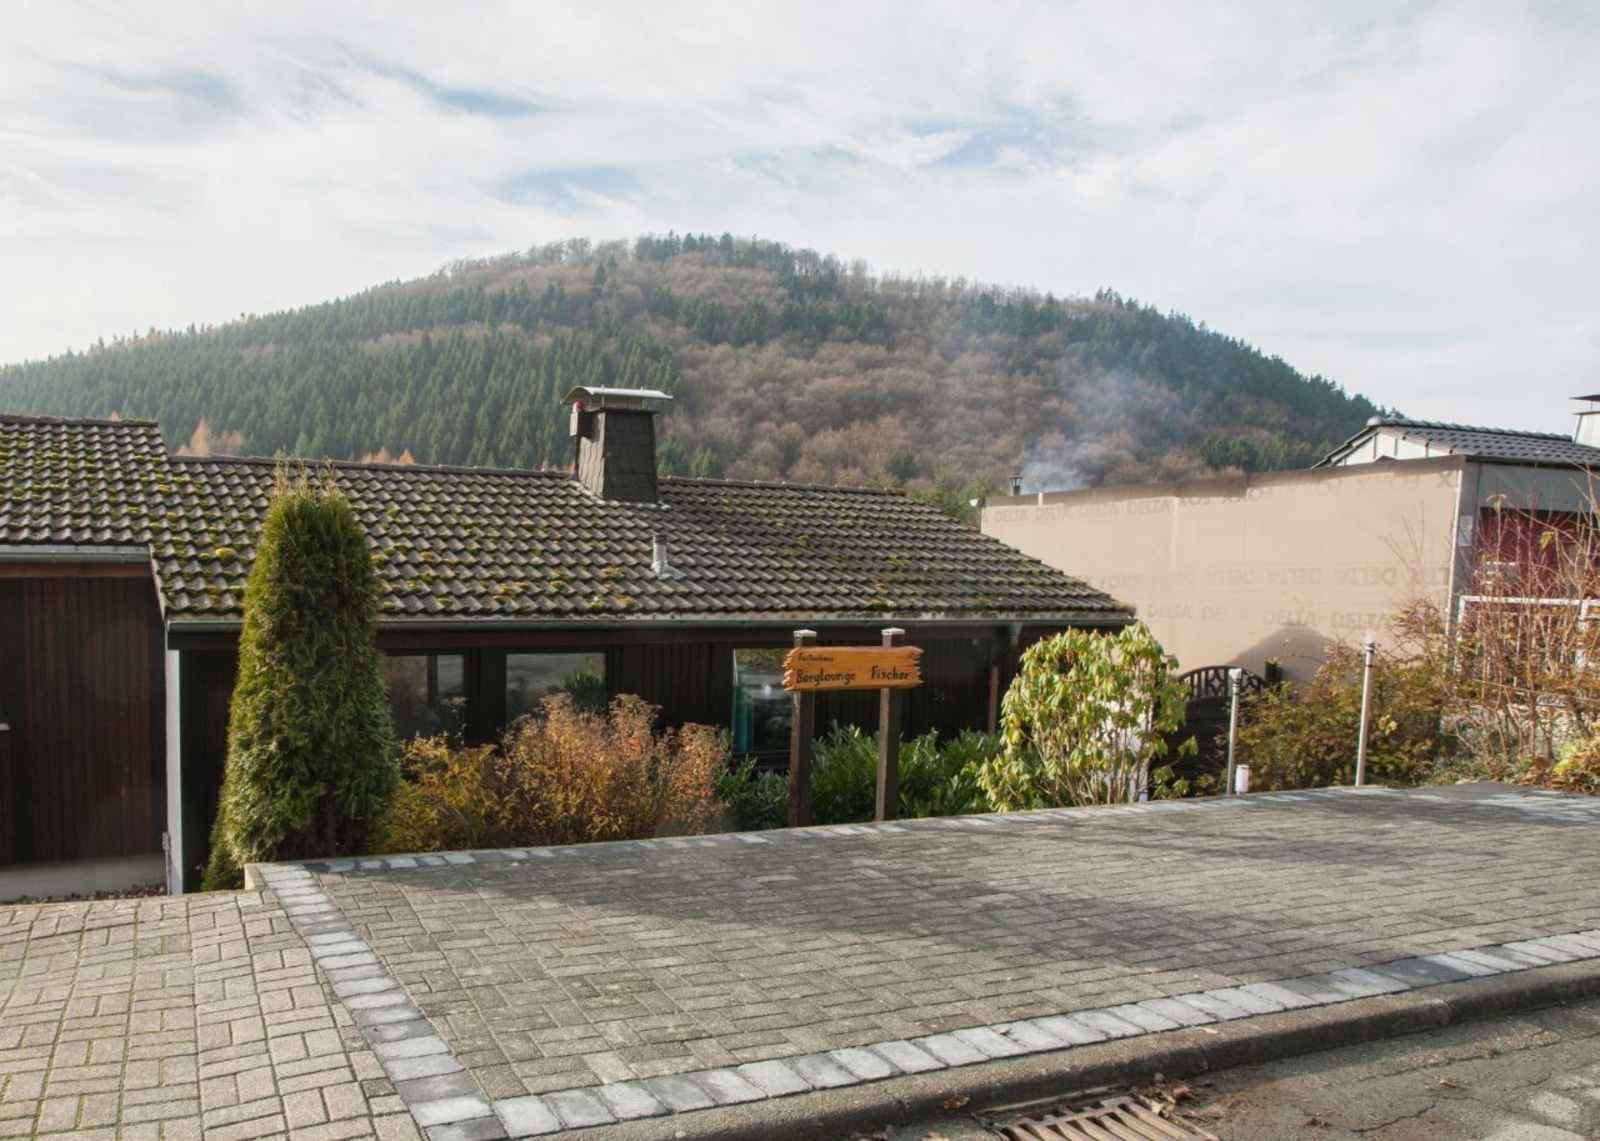 Luxe 6 persoons vakantiehuis dichtbij Winterberg - Duitsland - Europa - Niedersfeld